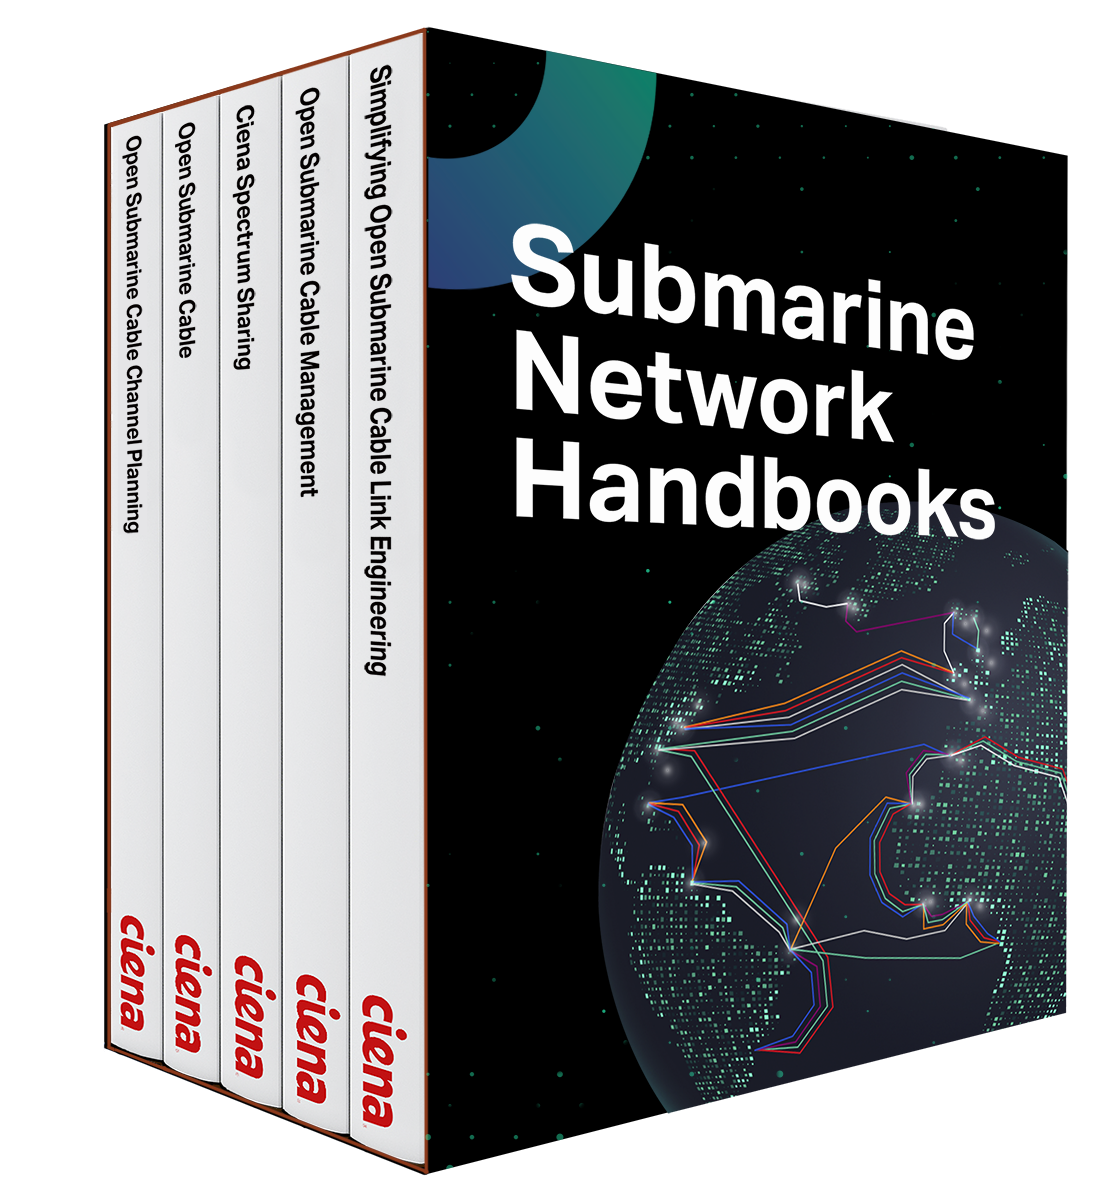 Submarine Network Handbooks